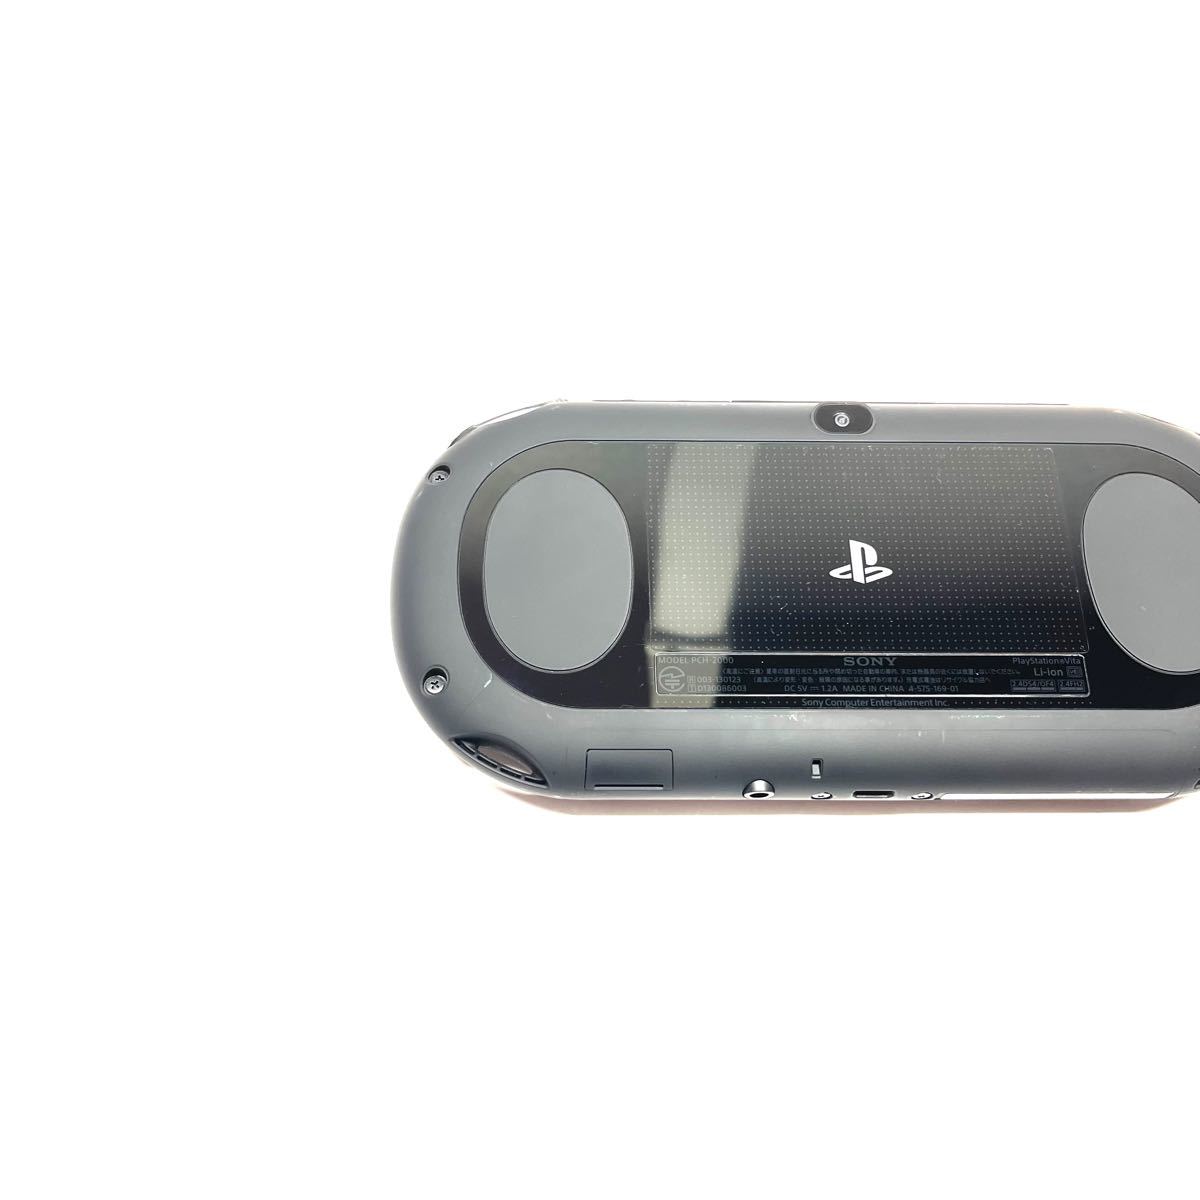 PlayStation Vita （PCH-2000シリーズ） Wi-Fiモデル ブラック PCH-2000ZA11